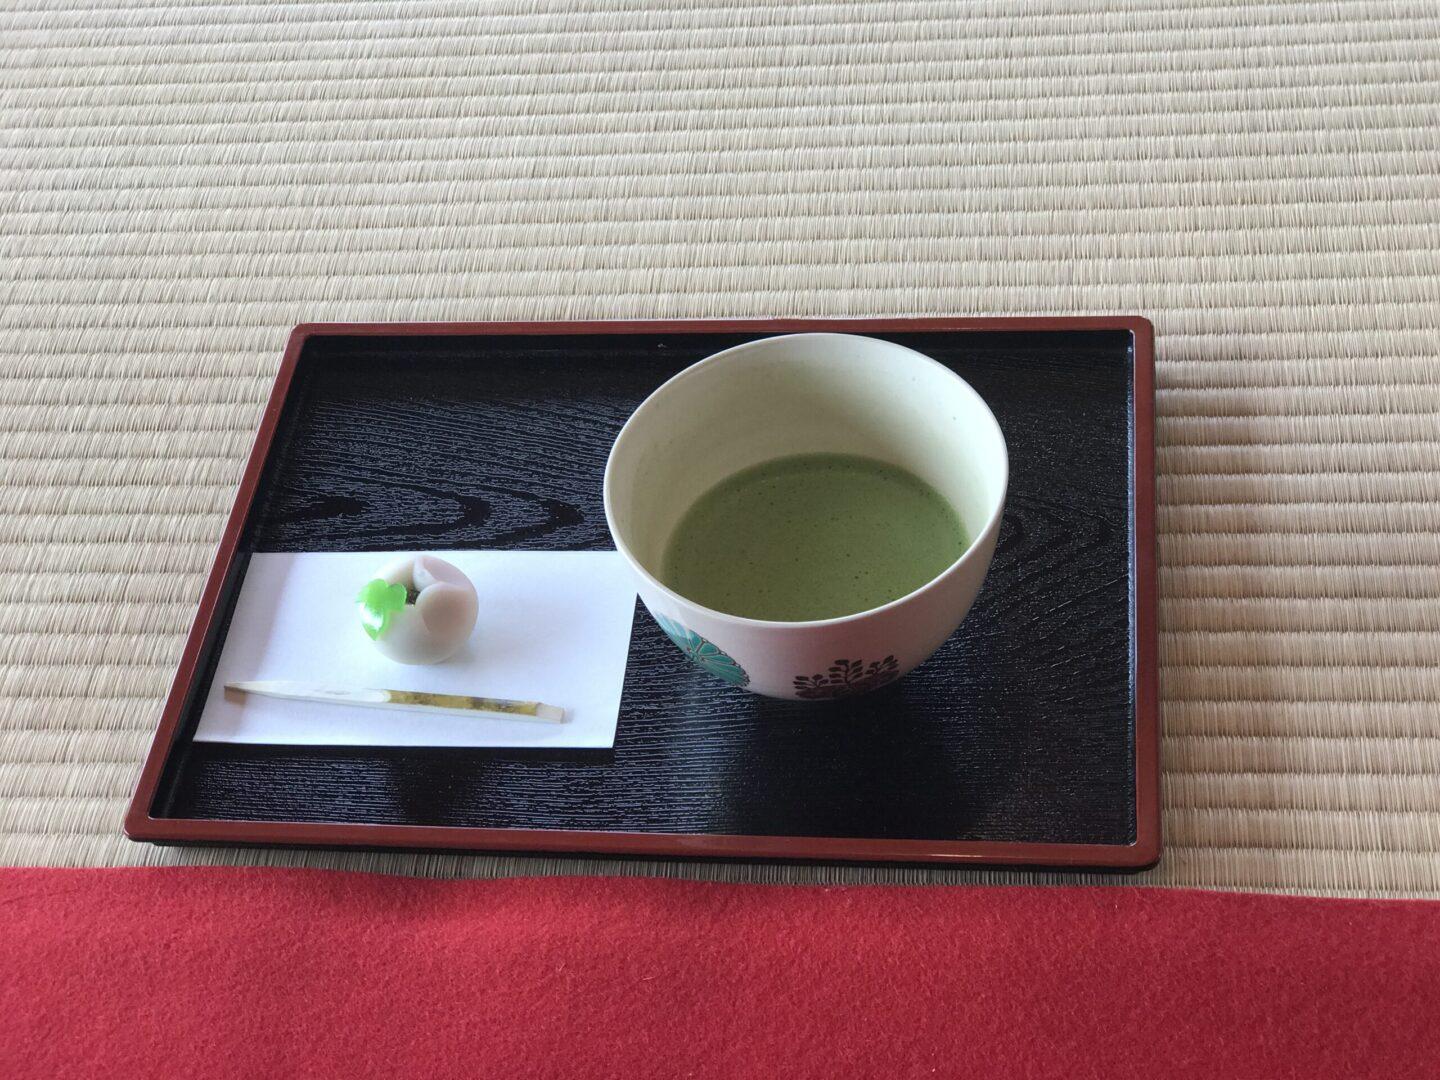 Matcha served inside a Japanese tea house